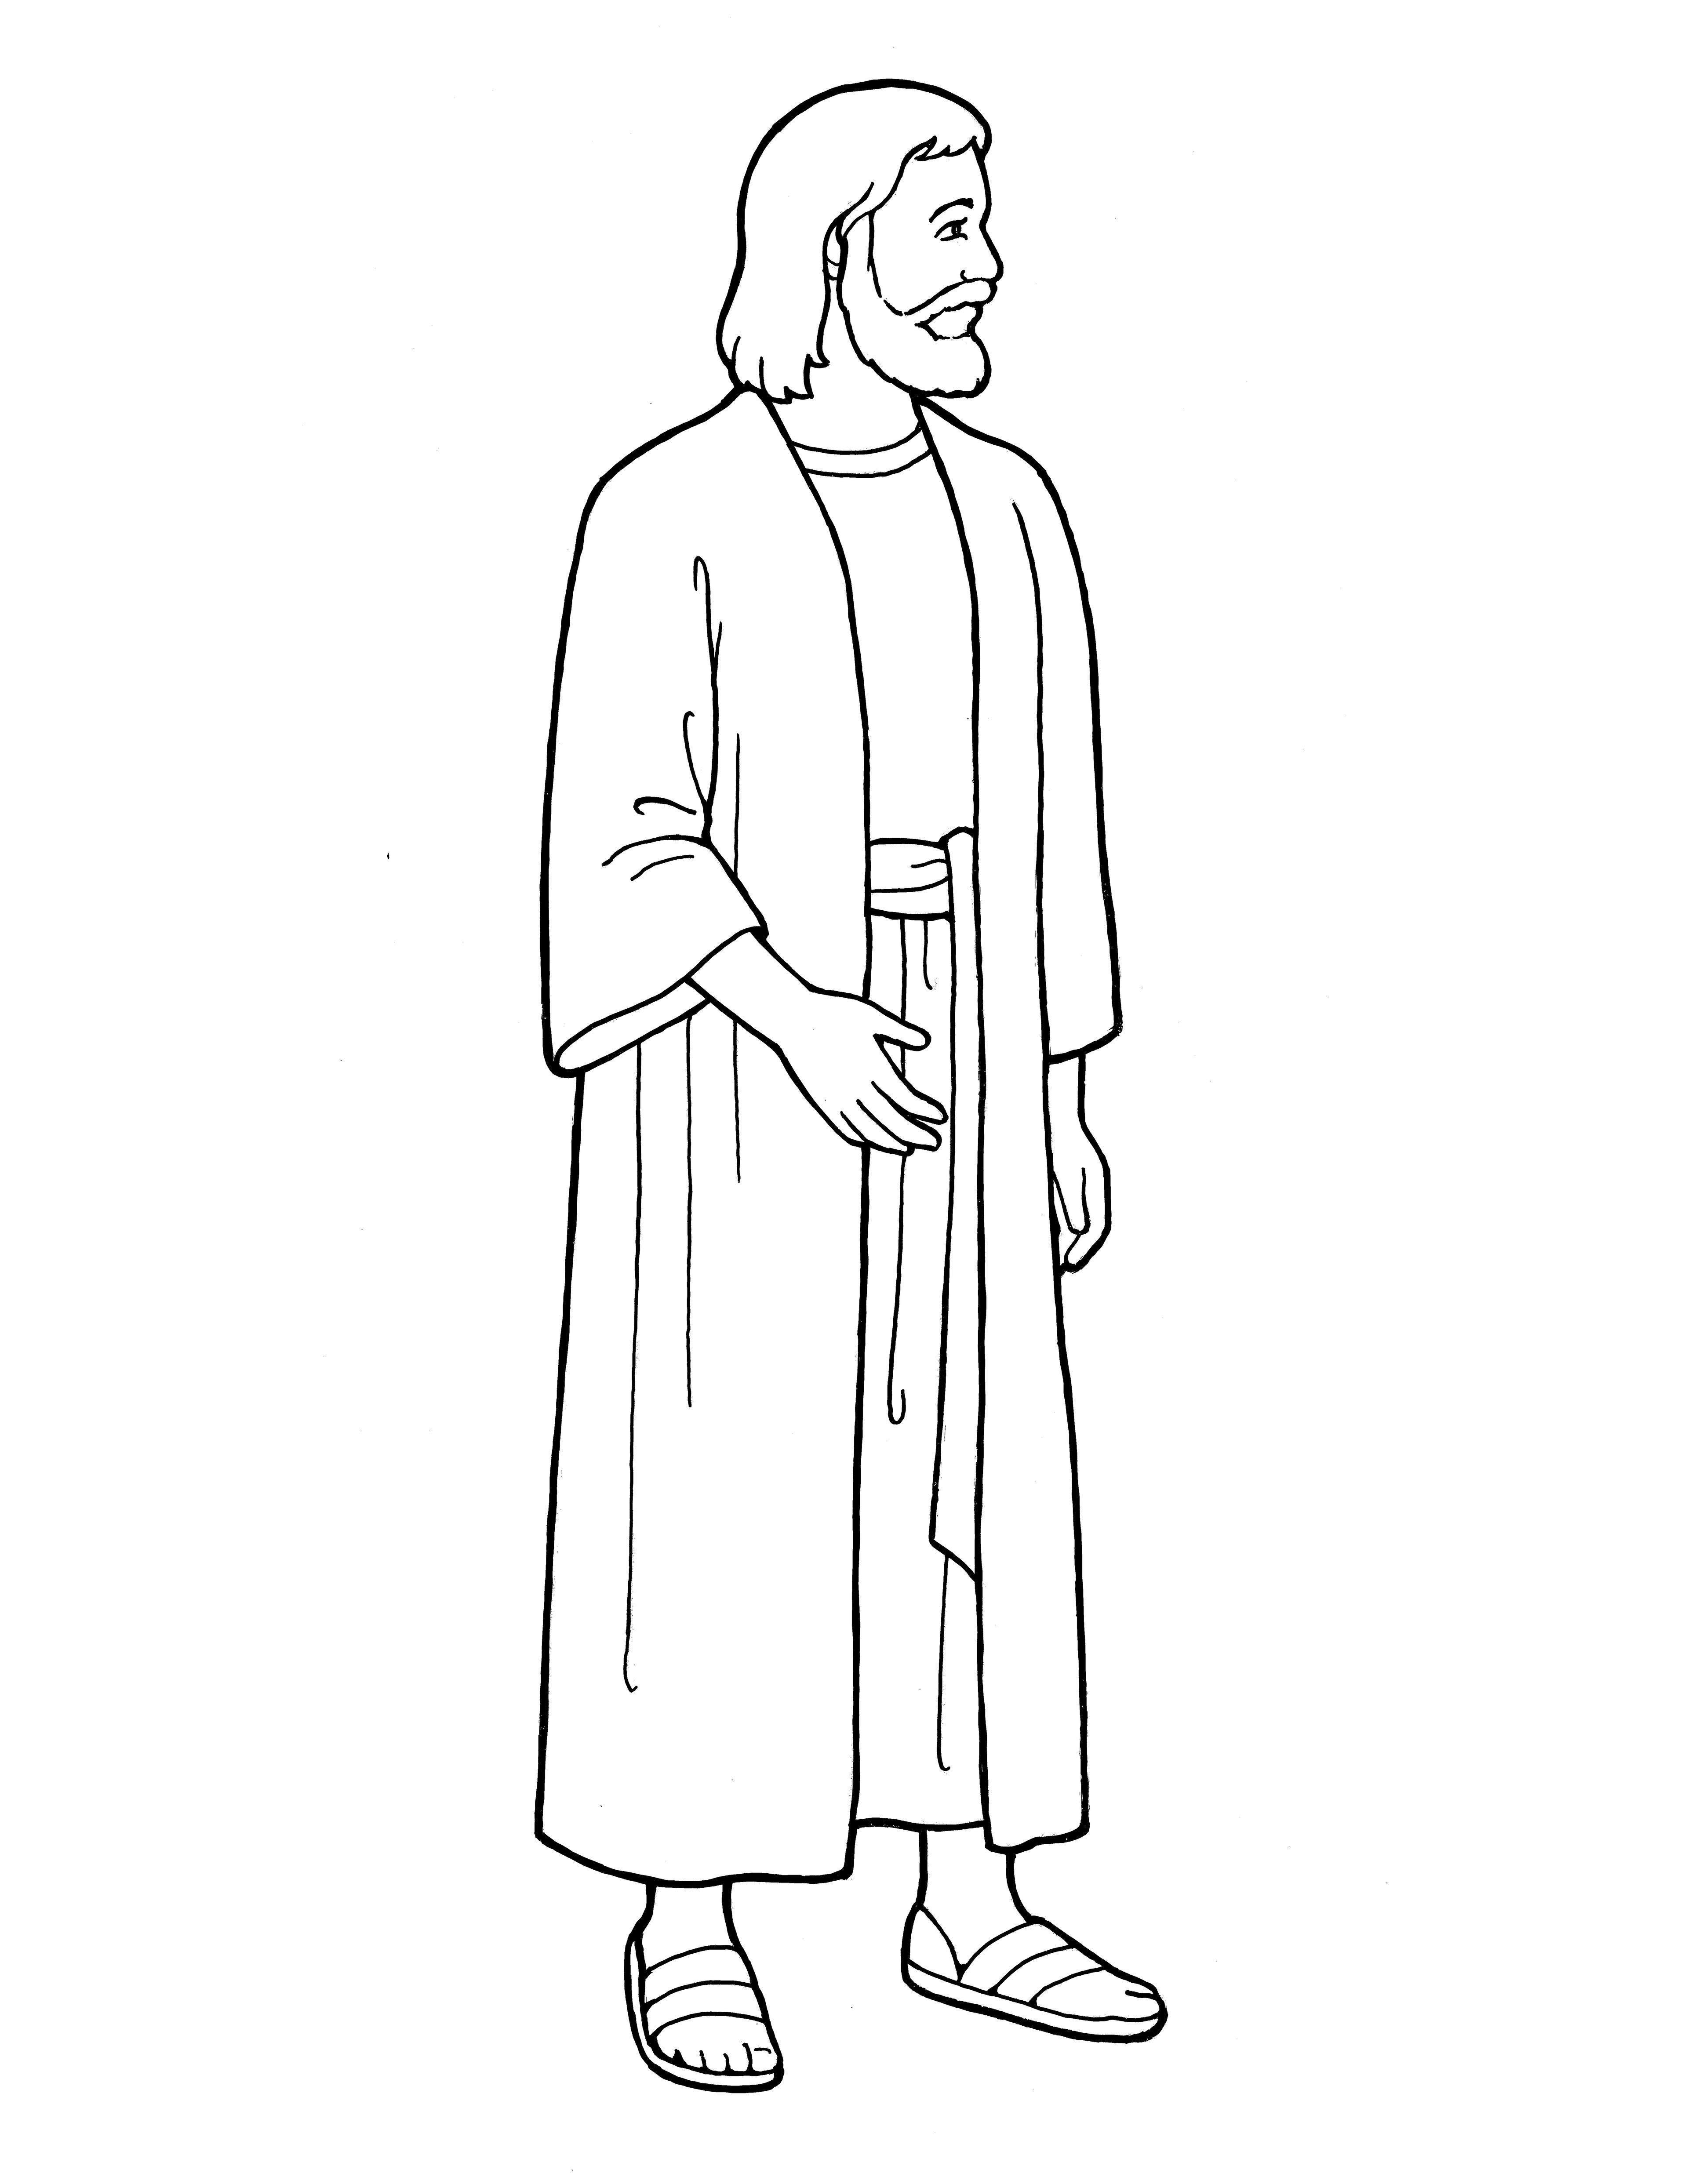 Ilustración de Cristo de pie, del Manual de la guardería “Mirad a vuestros pequeñitos”, 2008, página 123.